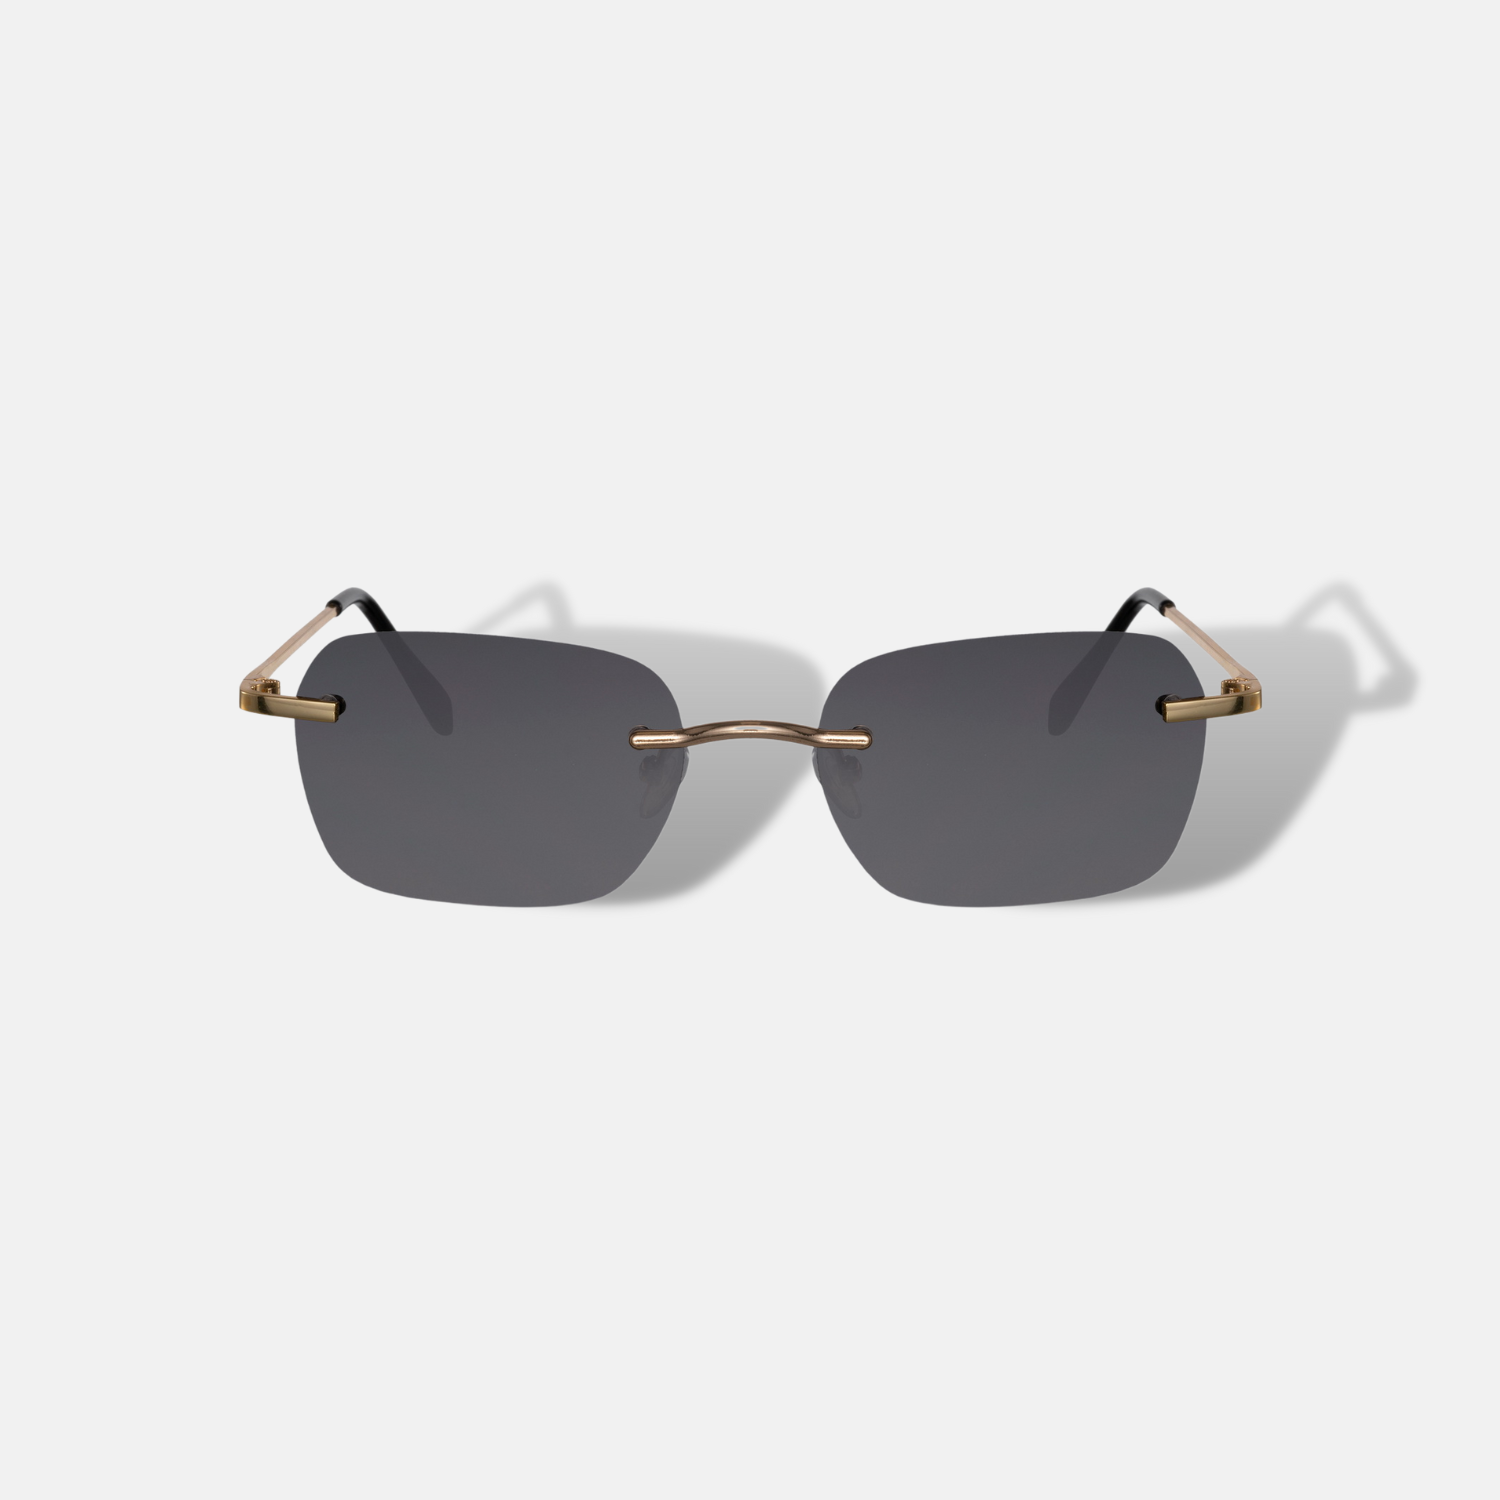 Unsere Sonnenbrille bietet hervorragenden Schutz vor schädlichen UV-Strahlen und vereint dabei Komfort und stilvolles Design. Mit der neuesten Kollektion bieten wir eine große Auswahl an hochwertigen und trendigen Sonnenbrillen für Damen und Herren